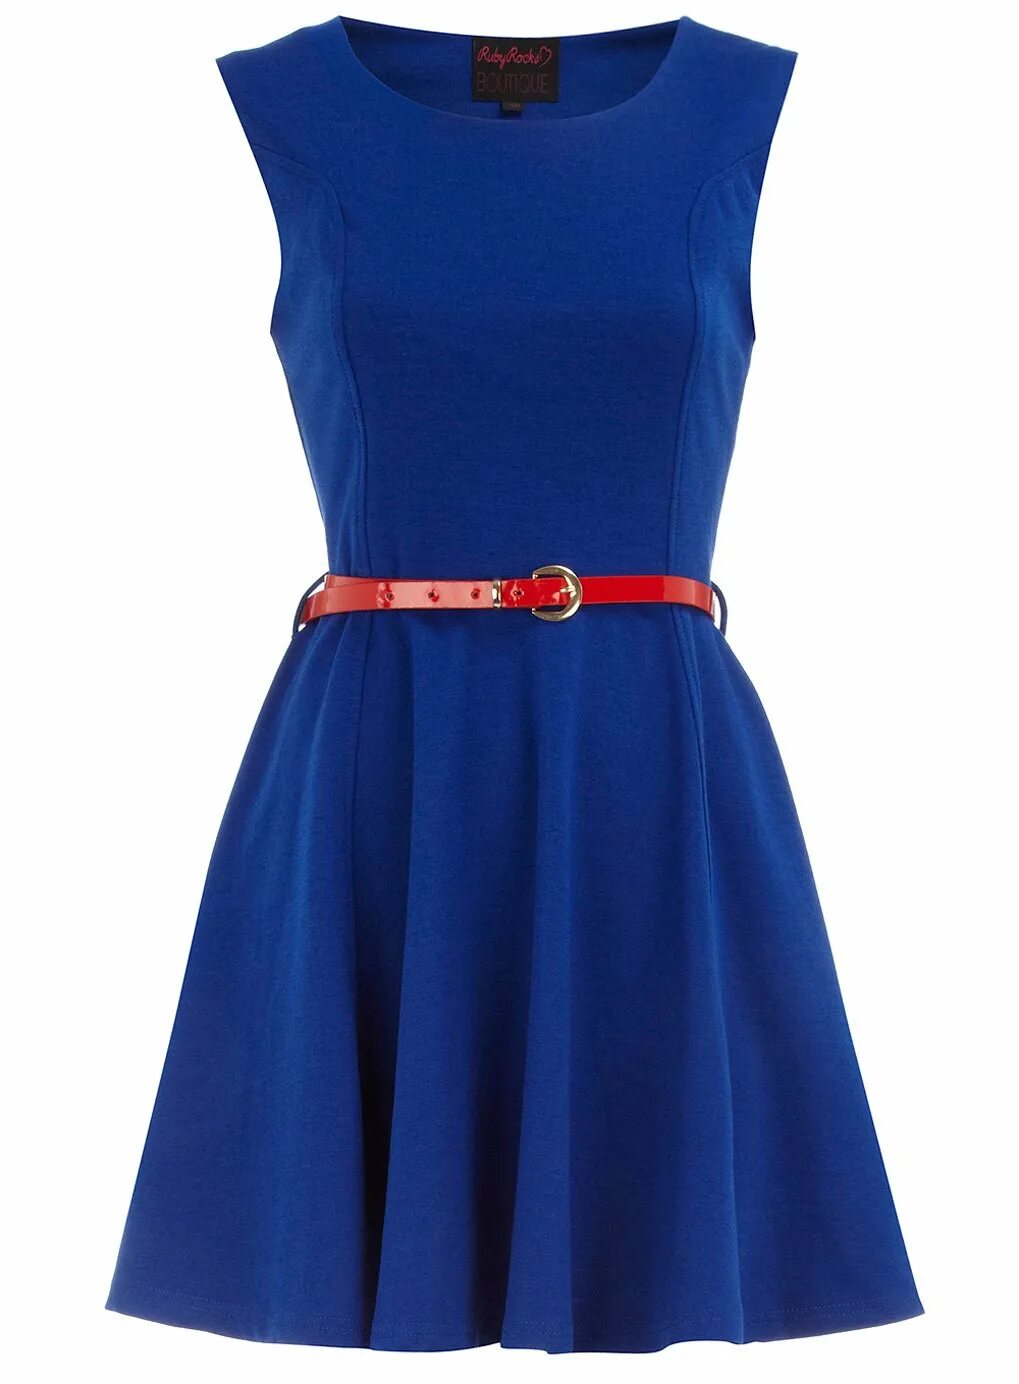 Платье без пояса. Miss Selfridge платье синее. Голубое платье. Синее платье с поясом. Ремень для платья.